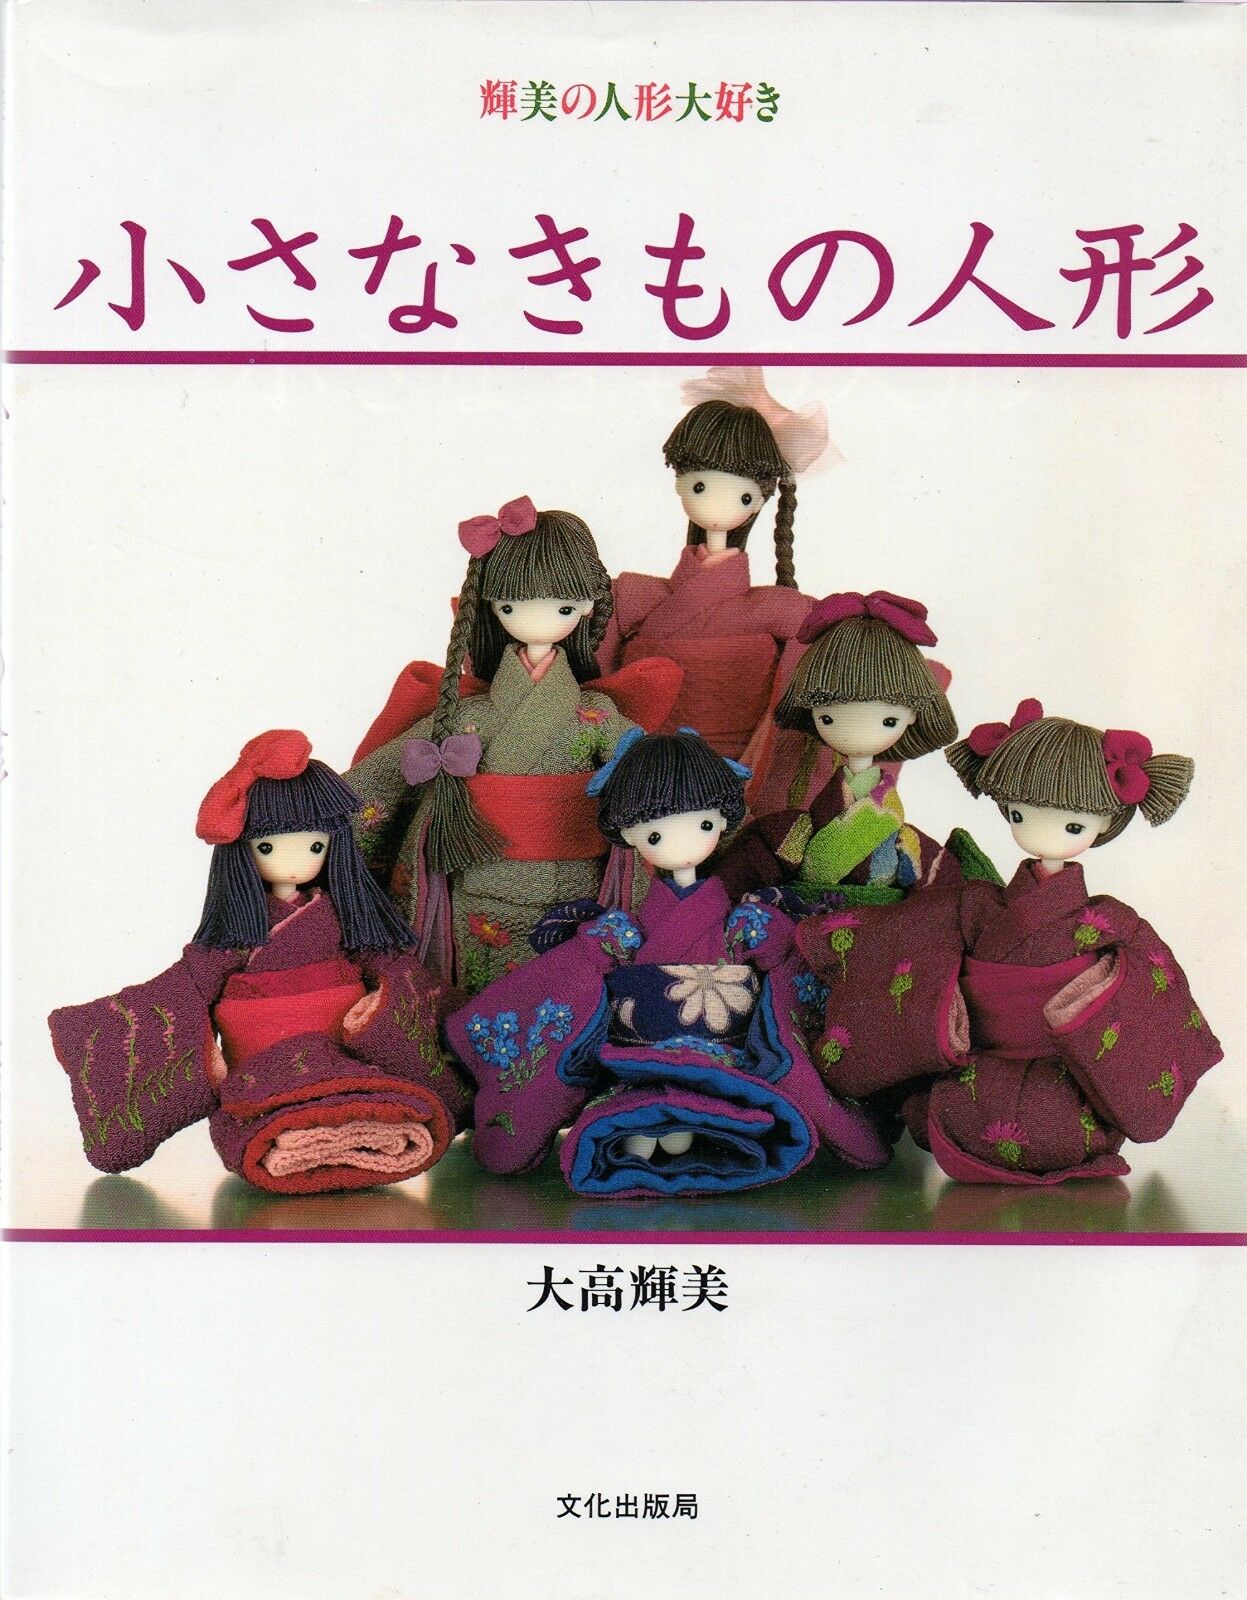 Rare! Terumi Otaka's Small Kimono Doll Japanese Handmade Craft Pattern Book